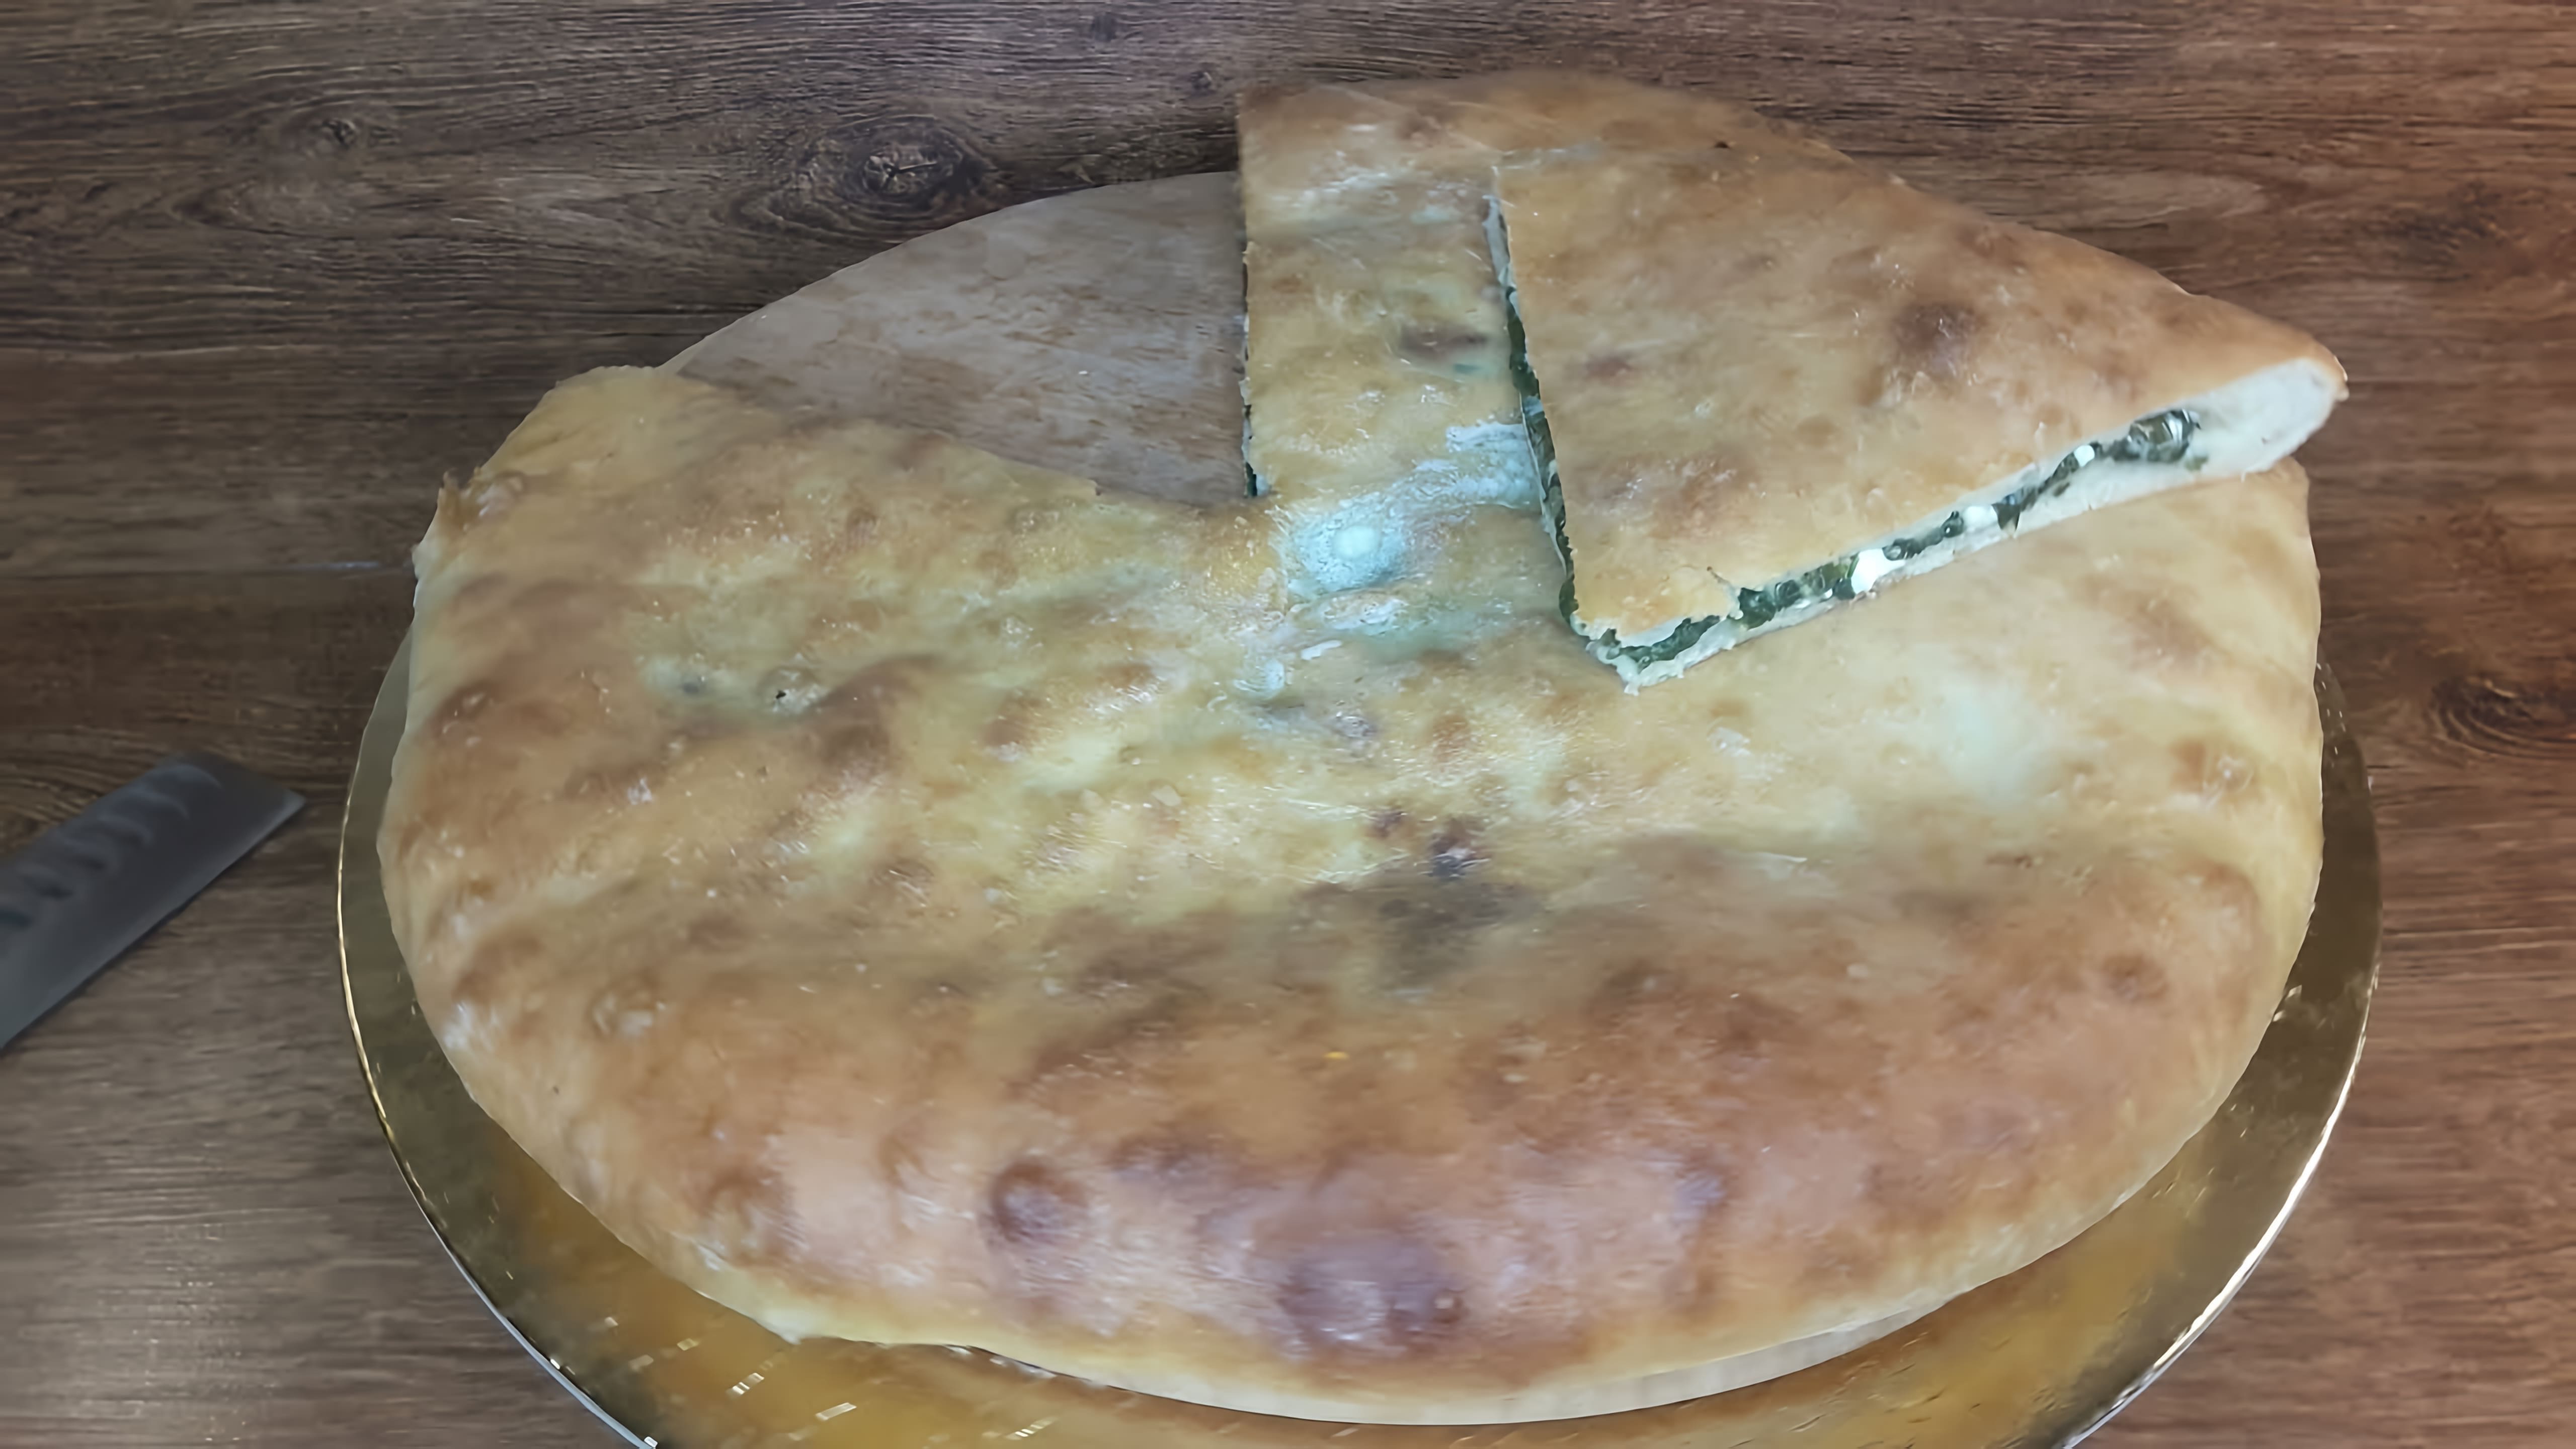 В этом видео демонстрируется процесс приготовления осетинского пирога с сыром и шпинатом